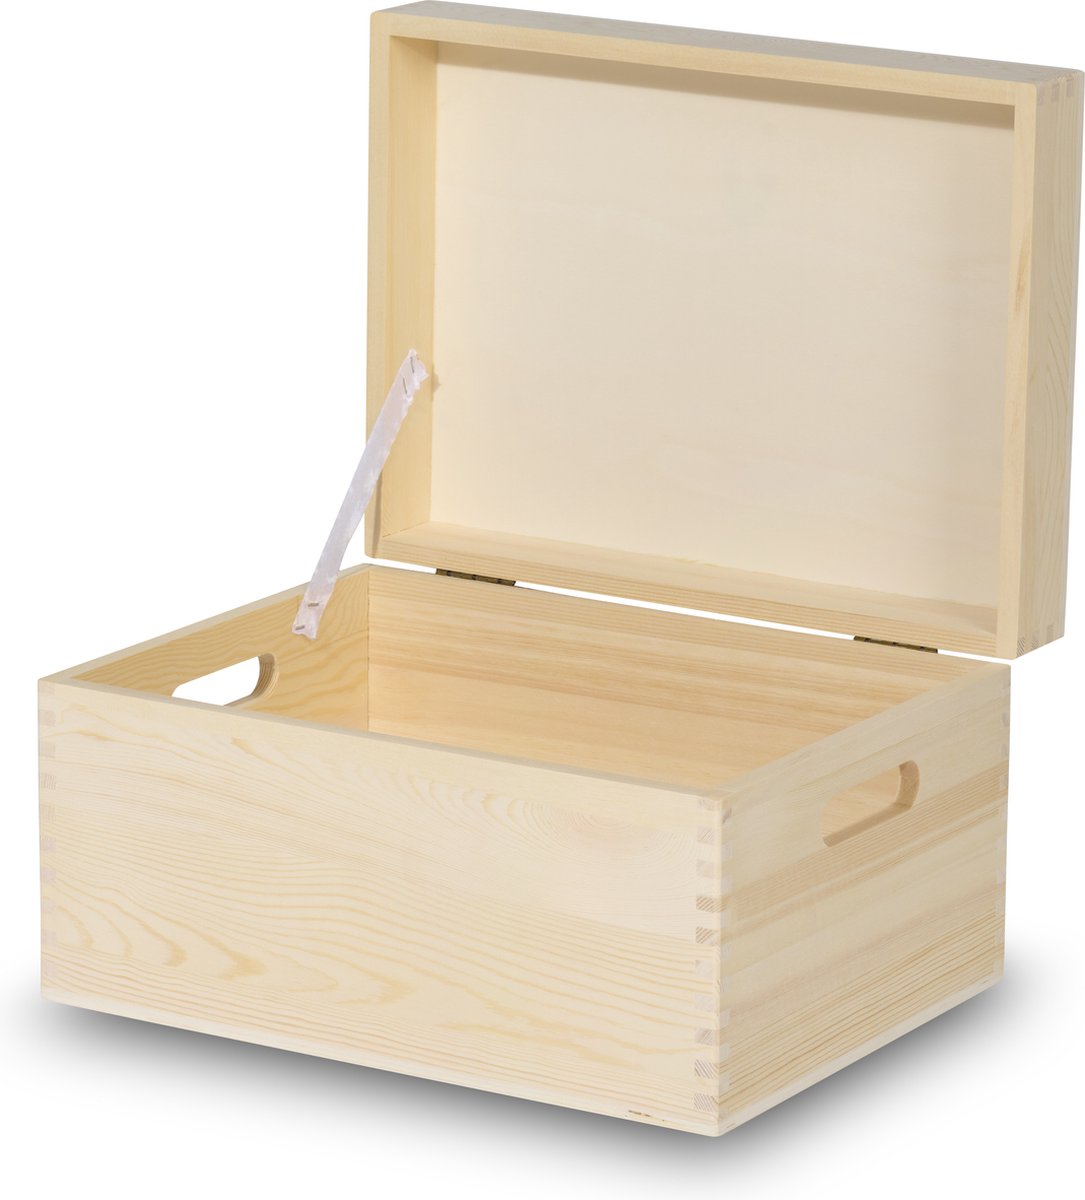 Houten kist | houten kist met deksel | 40x30x23cm | houten opbergkist | speelgoedkist | handvatten | documenten | speelgoed | herinneringsbox | herinneringenkist | houten box